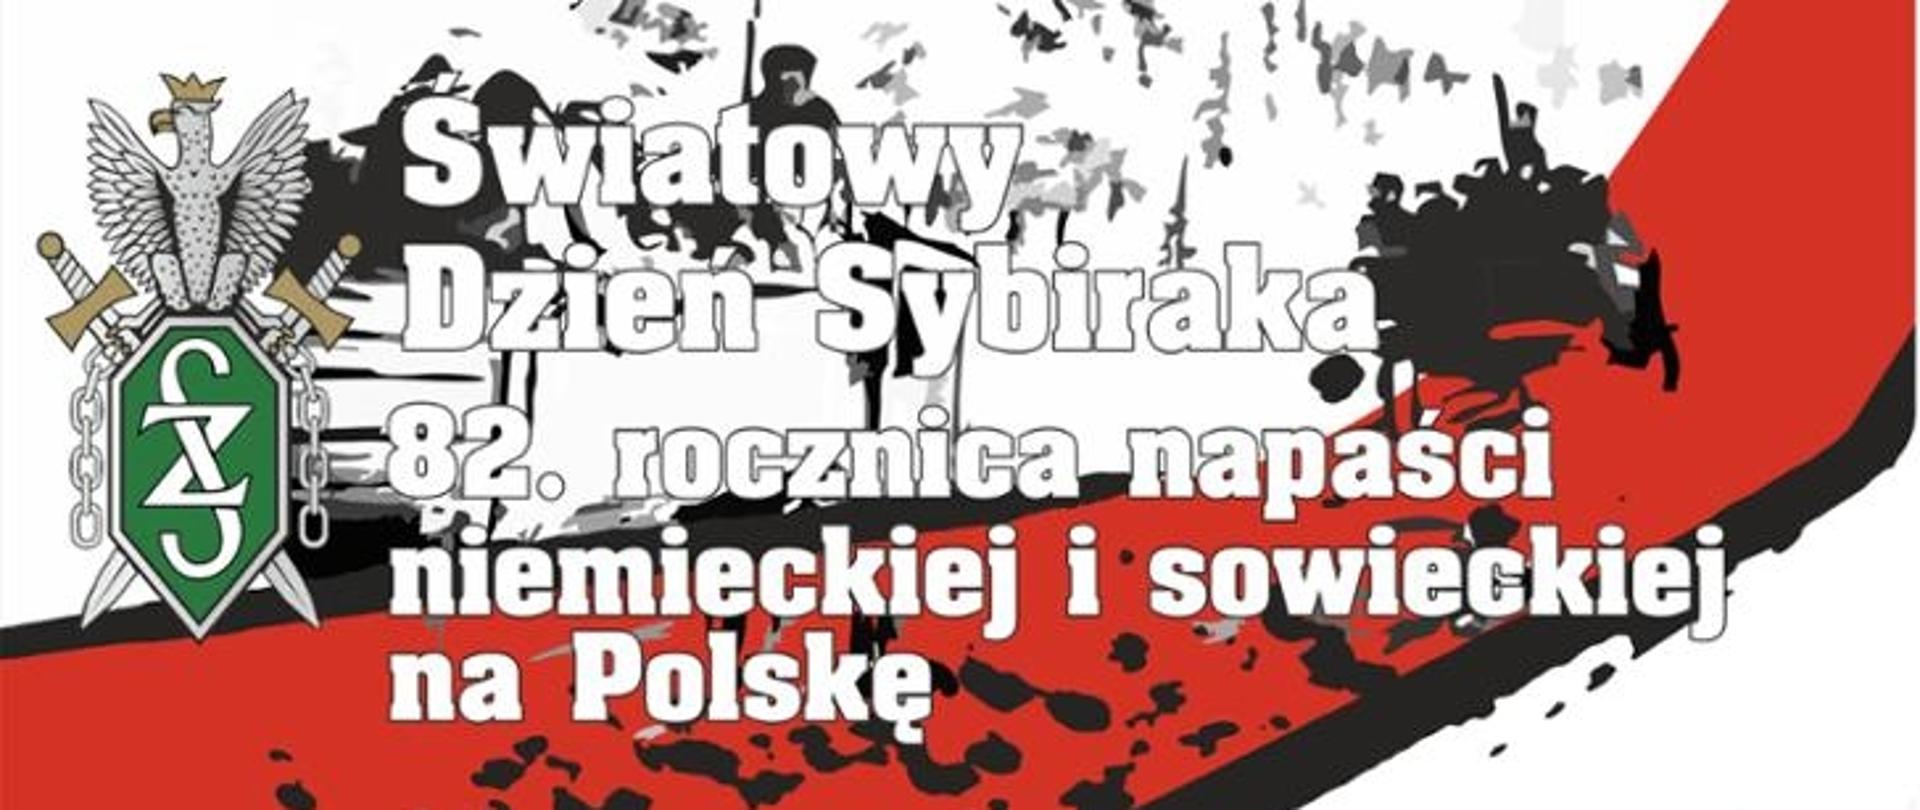 Zdjęcie przedstawia plakat reklamujący Światowy Dzień Sybiraka oraz 82 rocznicę napaści niemieckiej i sowieckiej na Polskę.